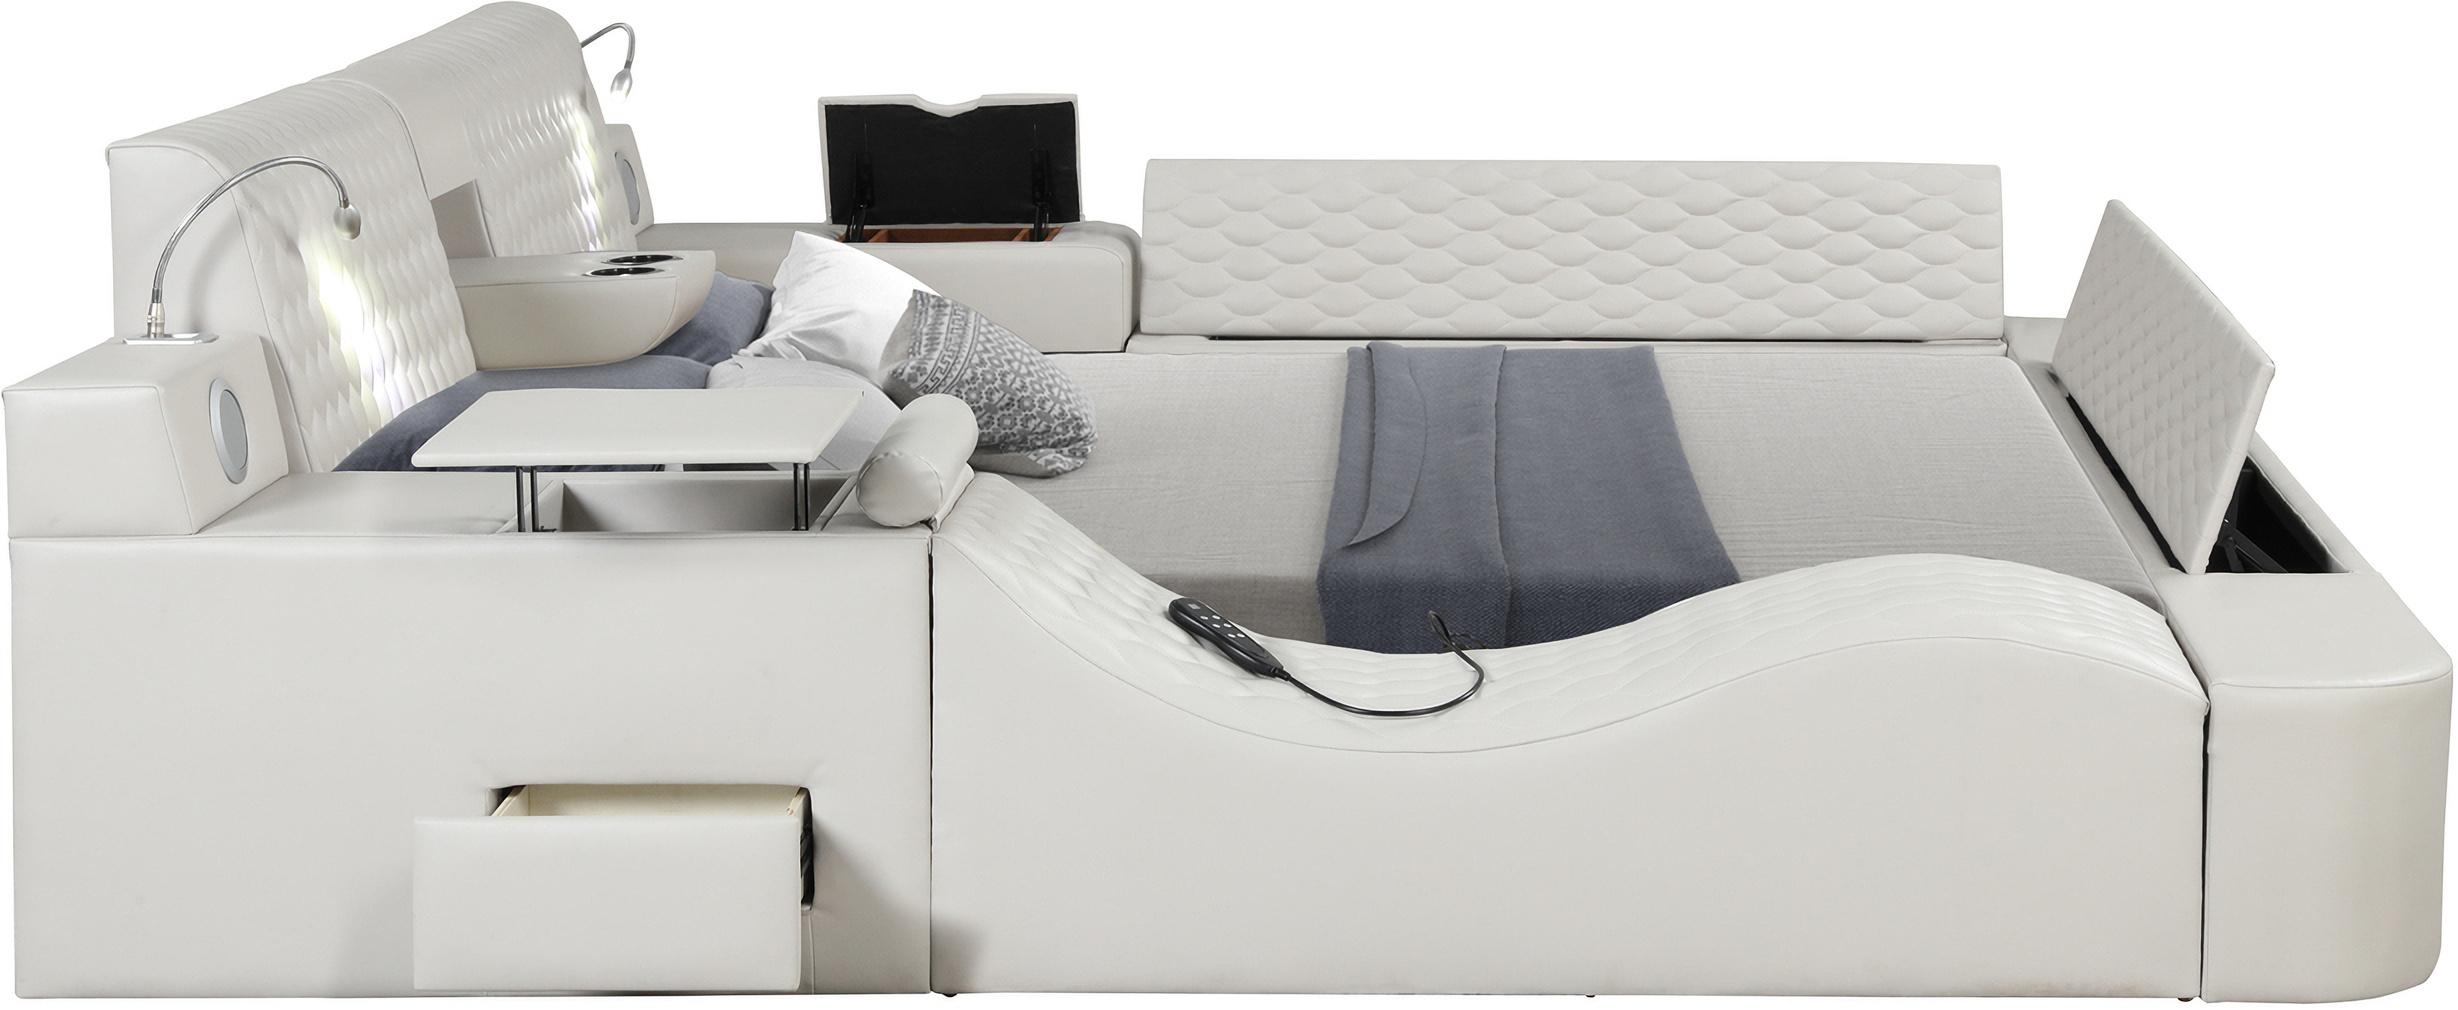 

    
ZOYA-WH-EK Galaxy Home Furniture Storage Bed
